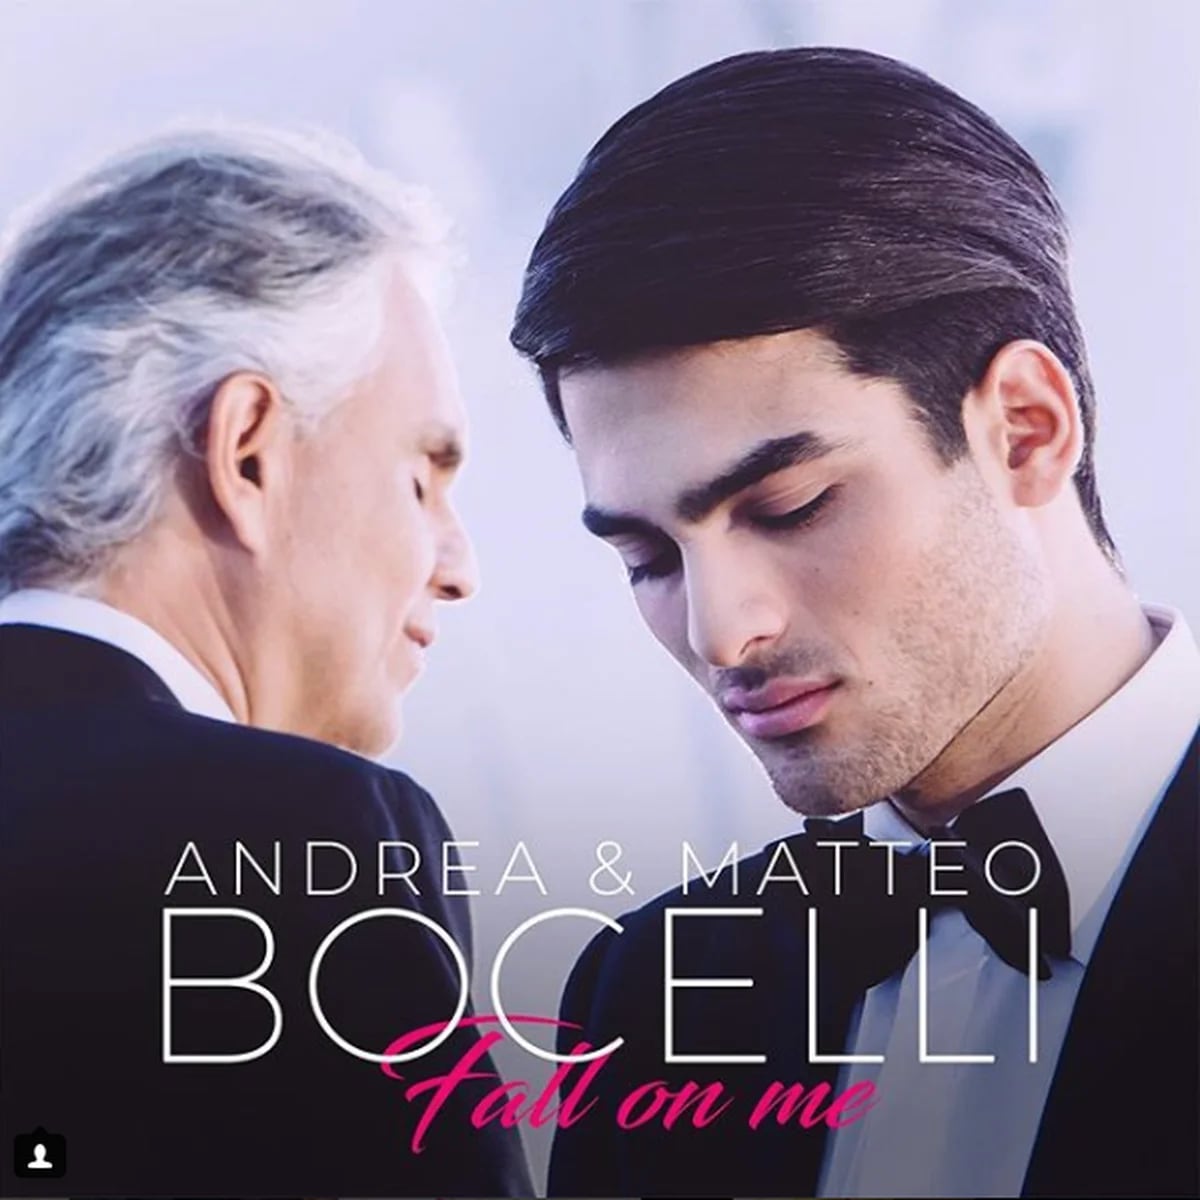 Andrea Bocelli usa los ojos de su hijo para disfrutar del verano